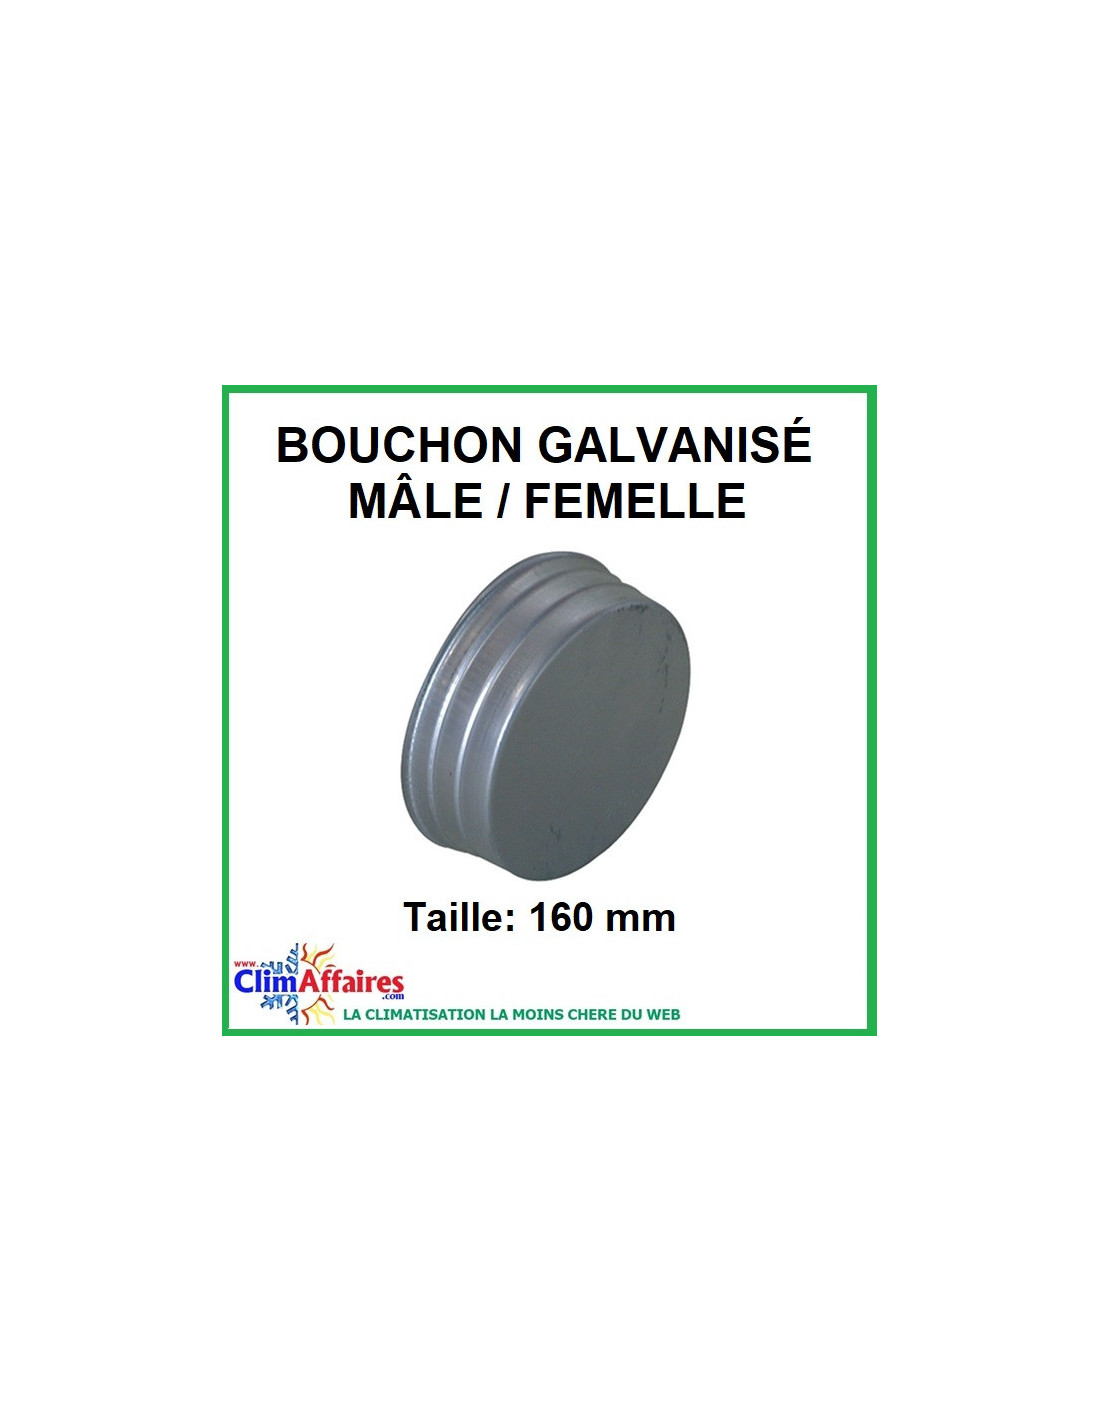 Bouchon diamètre 100 mm male-femelle galvanisé - 7,39€